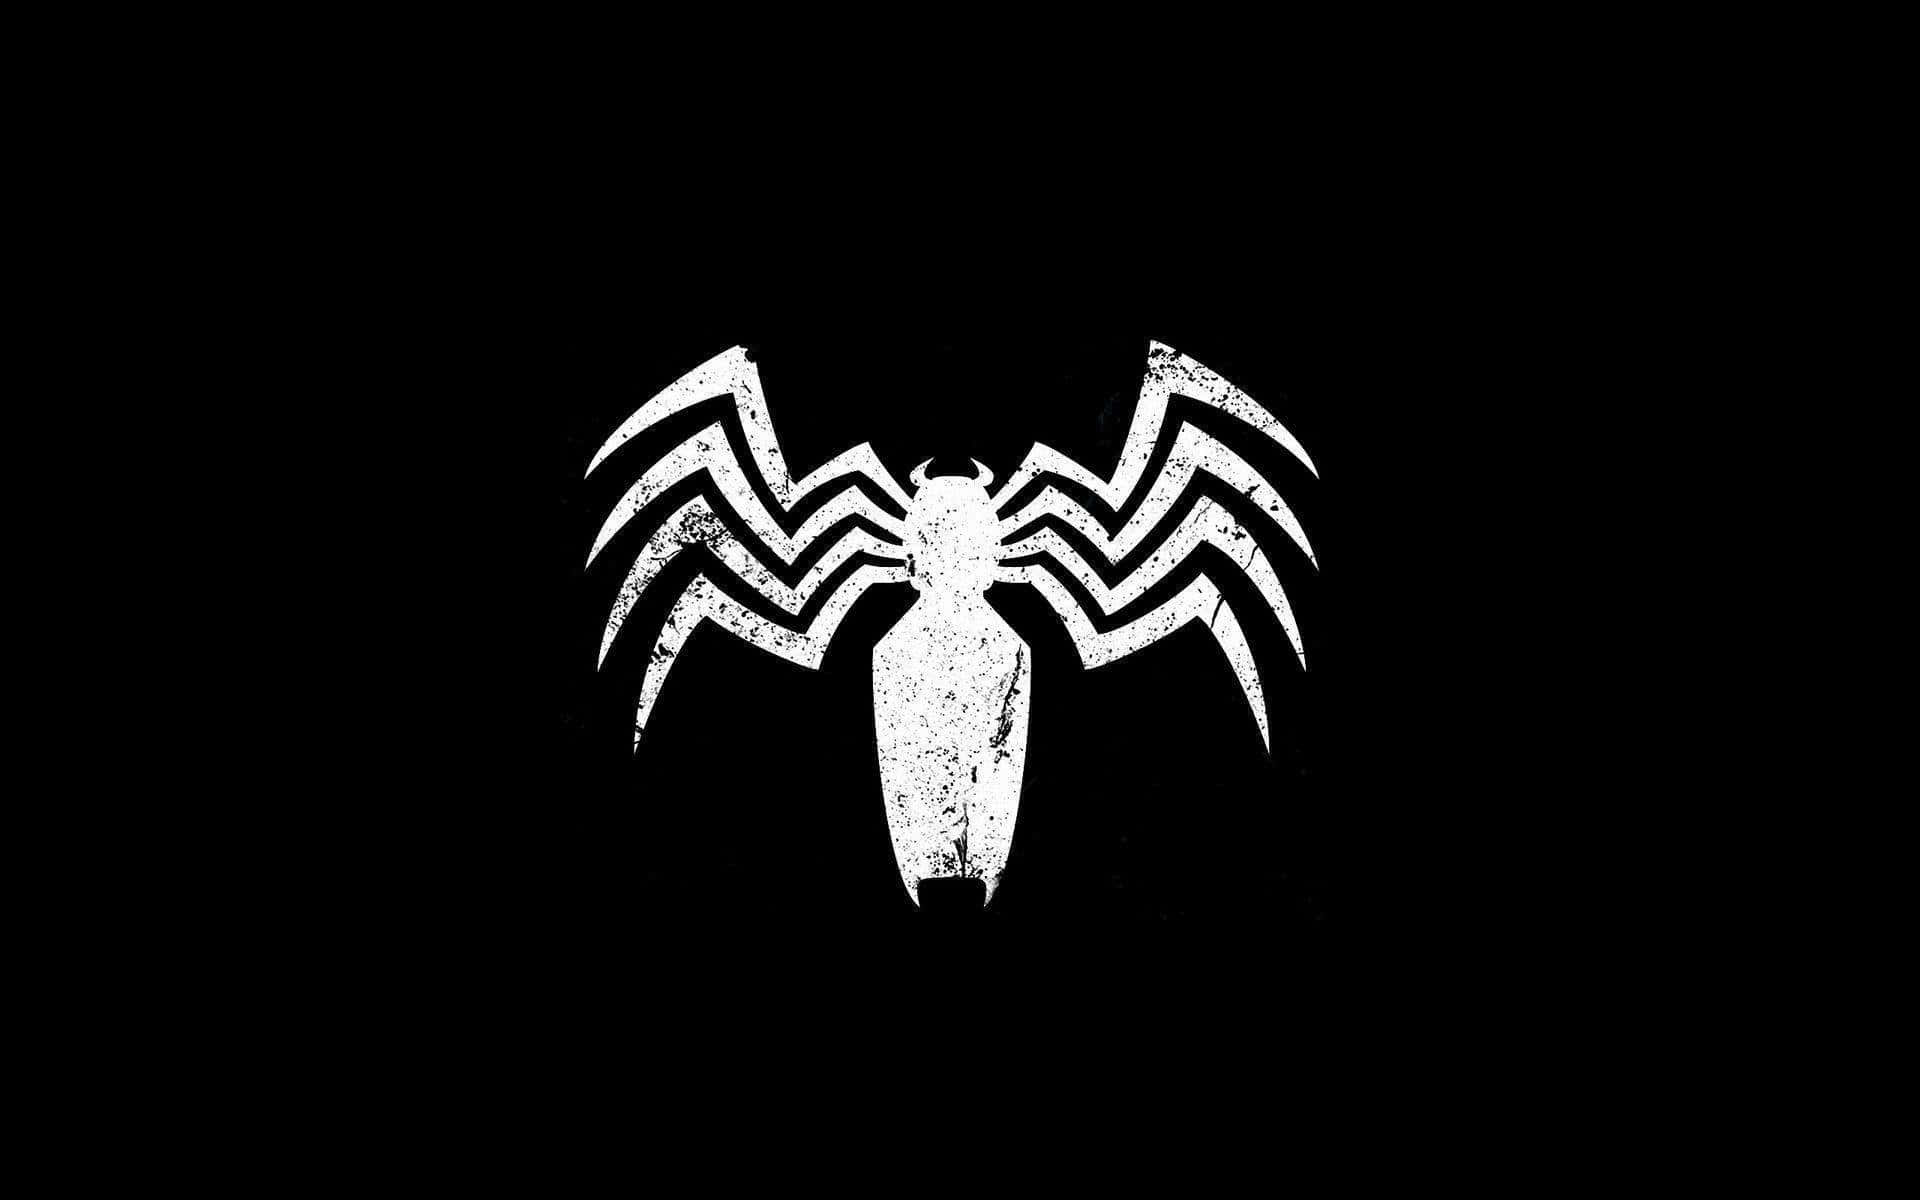 Unleashing Darkness - Venom